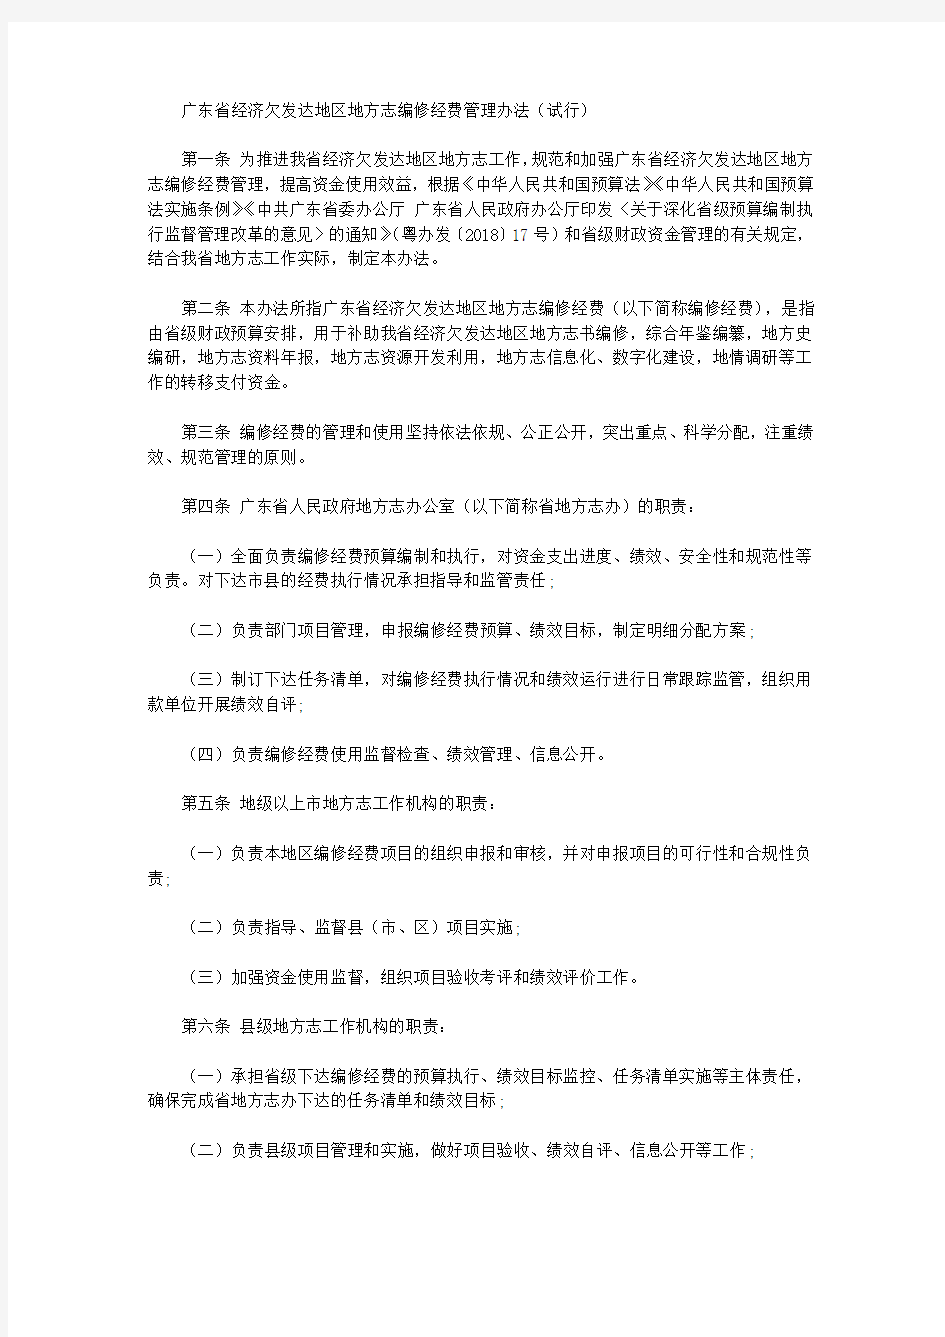 广东省经济欠发达地区地方志编修经费管理办法(试行)